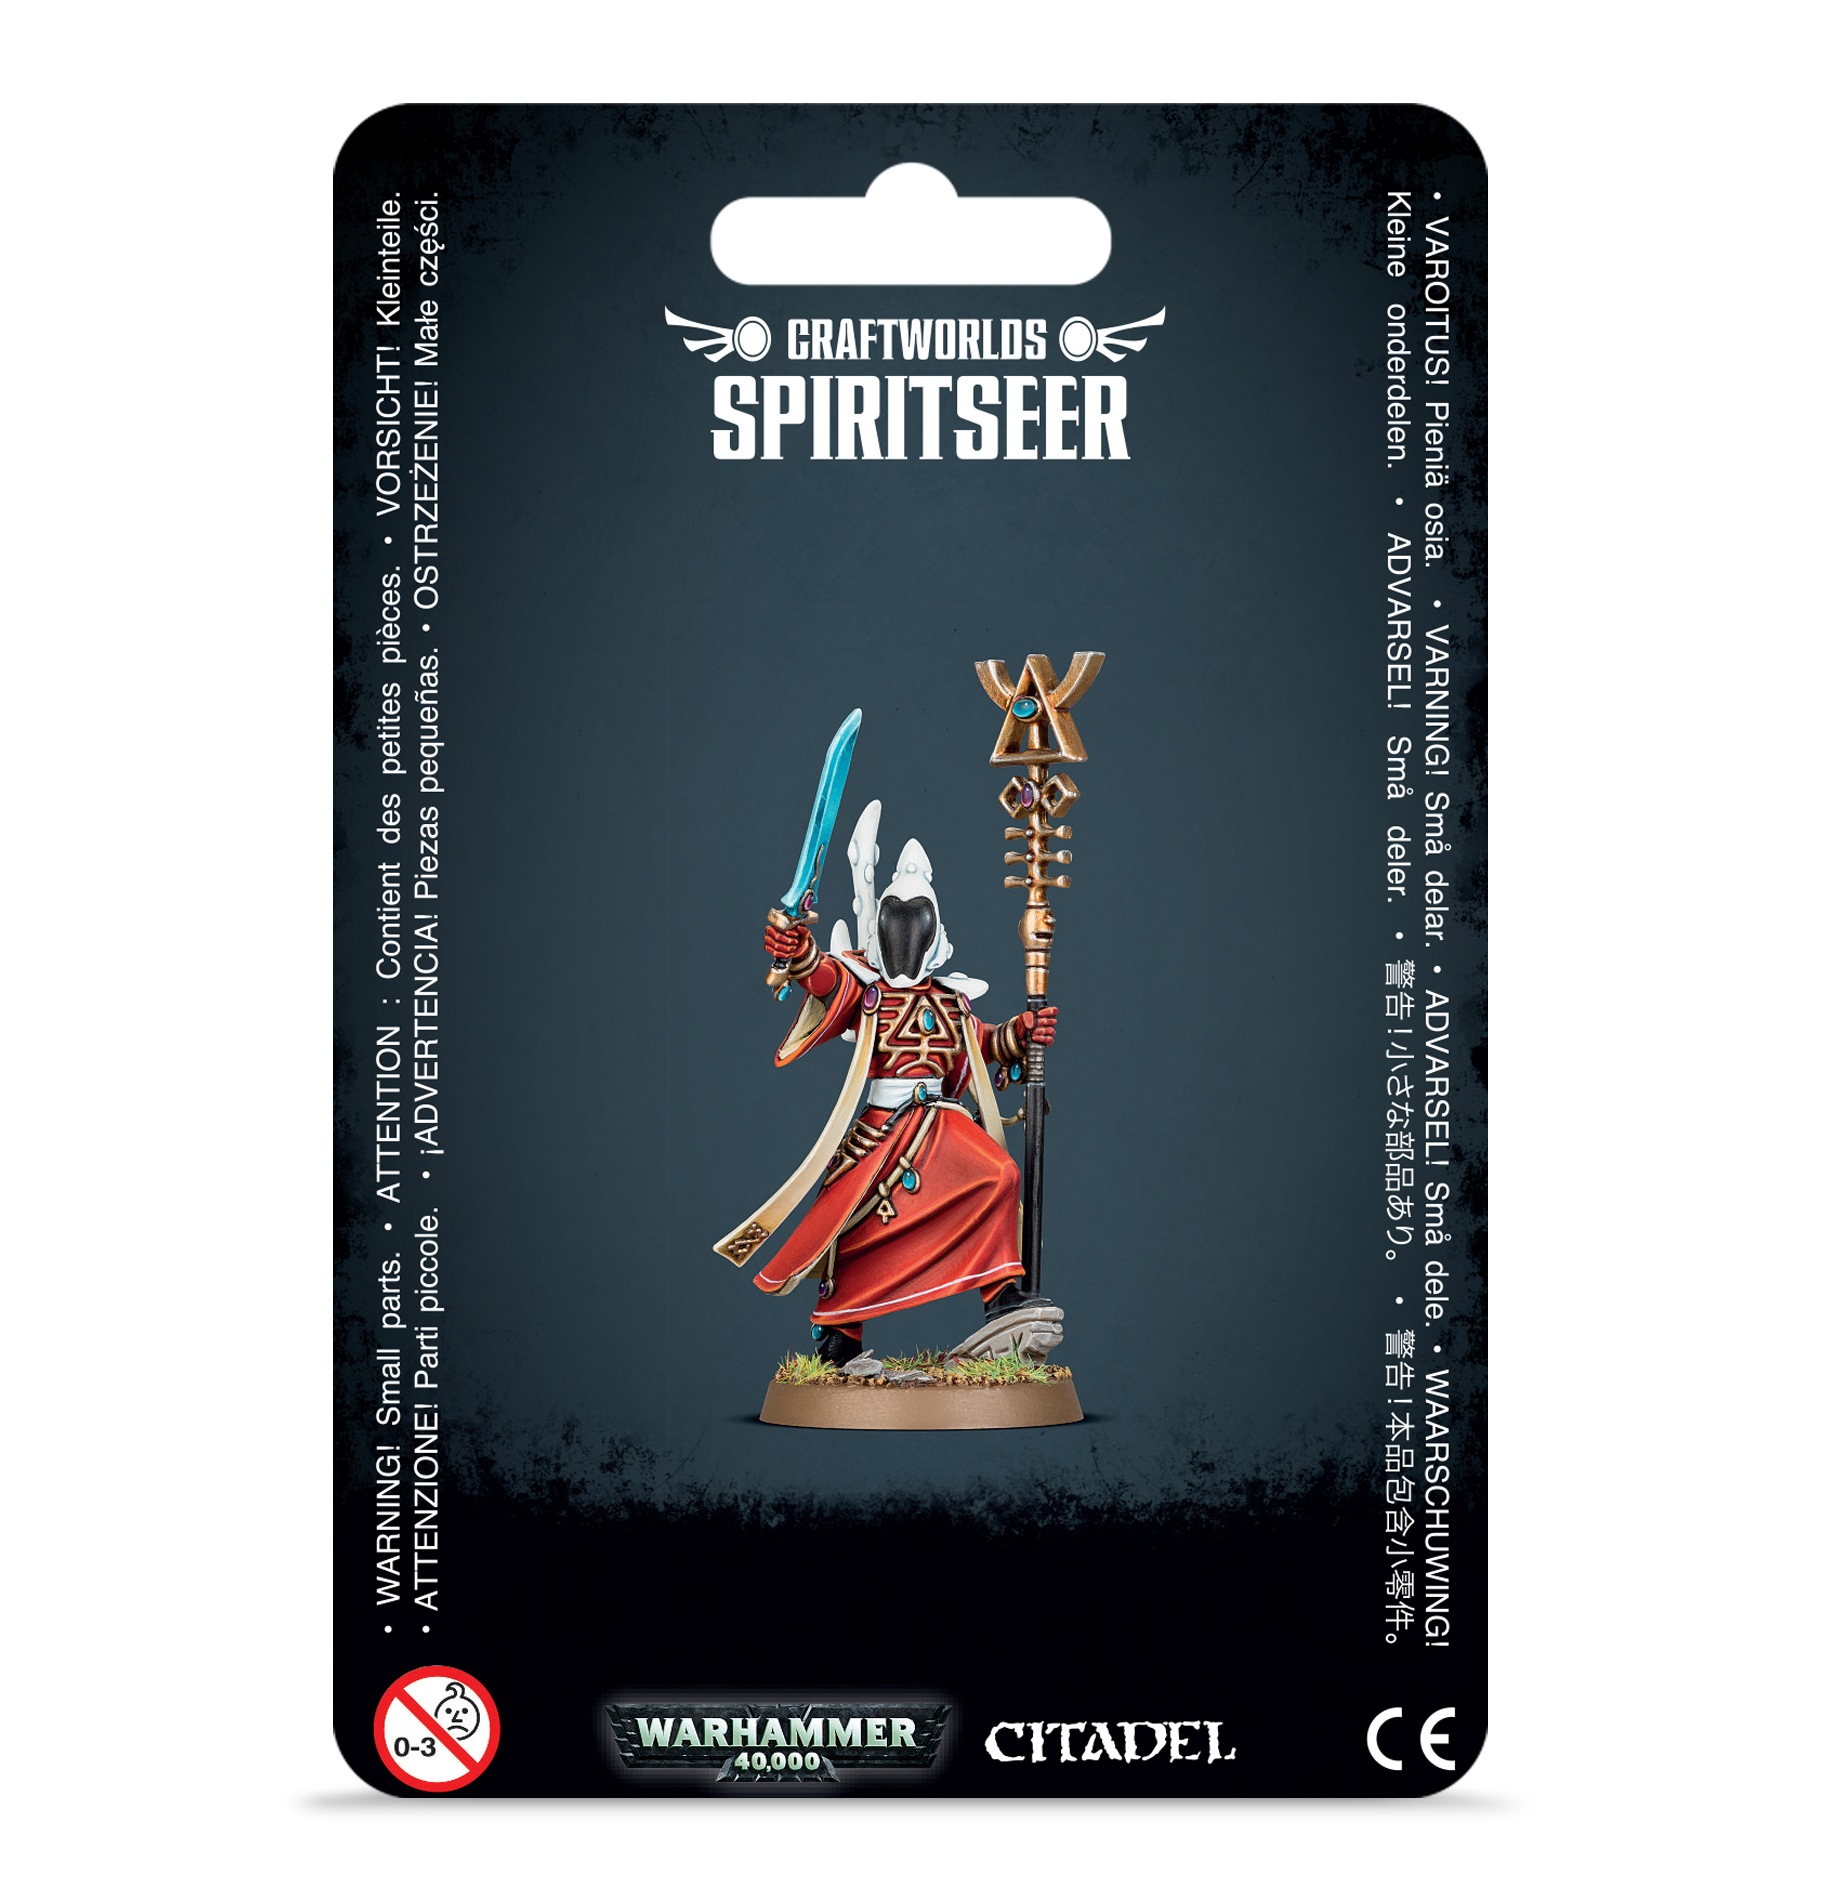 Spiritseer - 46-61 - Craftworlds - Warhammer 40.000